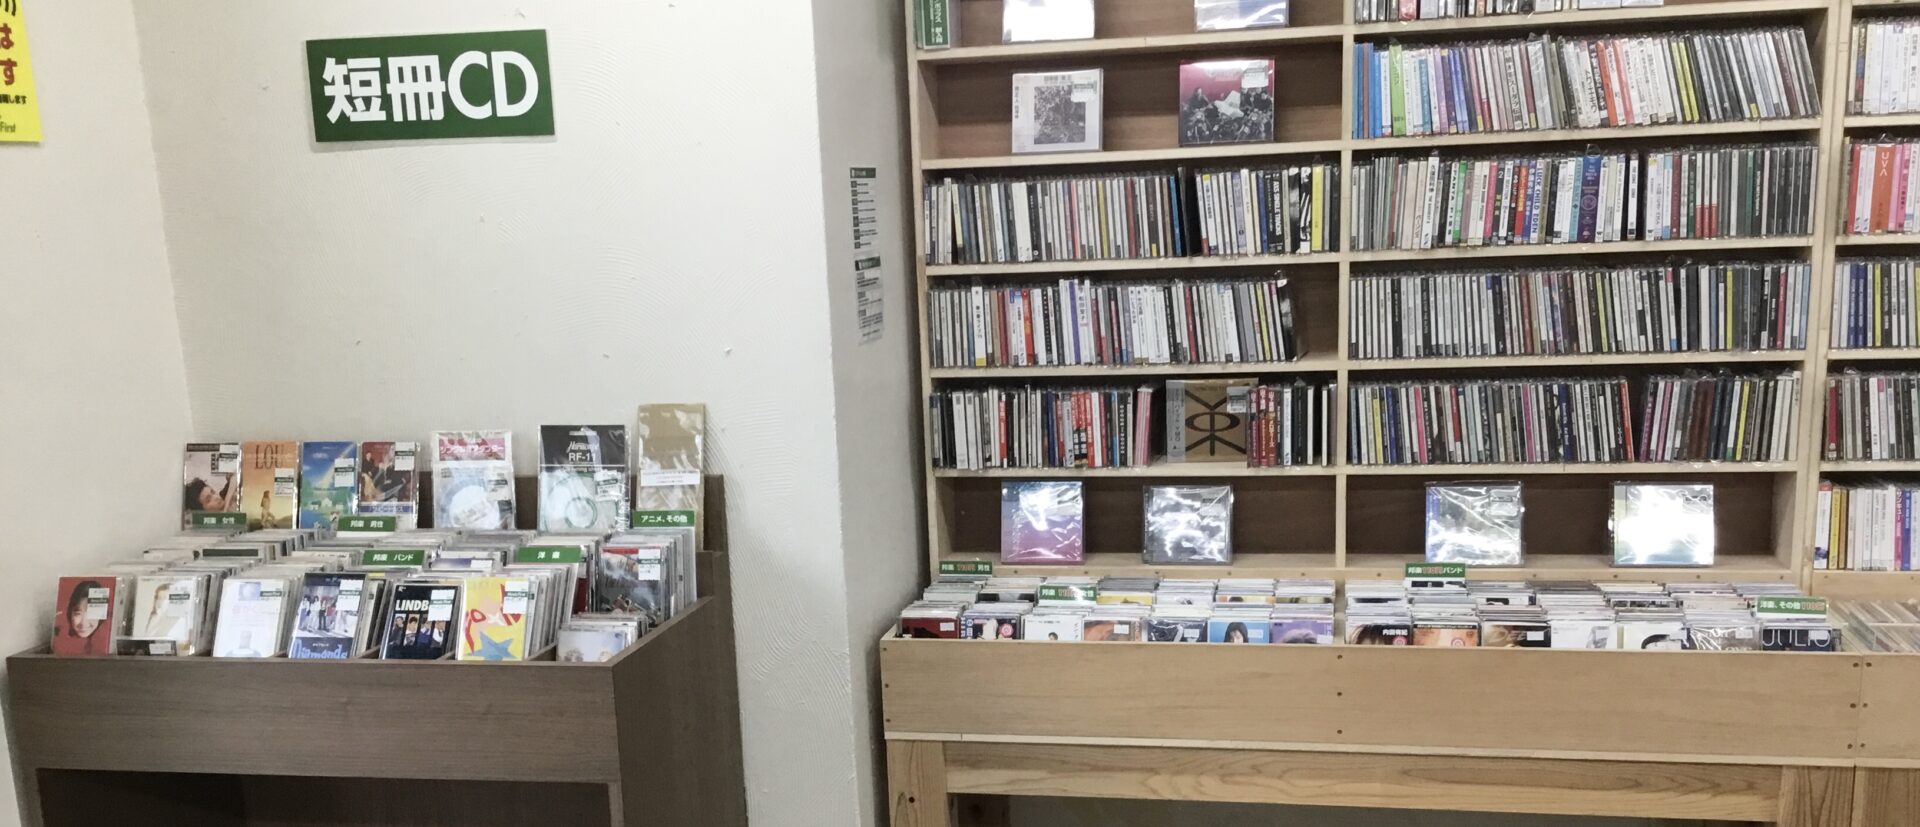 【店員の一口メモ】8cmCD(短冊CD)の110円商品が邦楽CDコーナー下段へ移動しております。